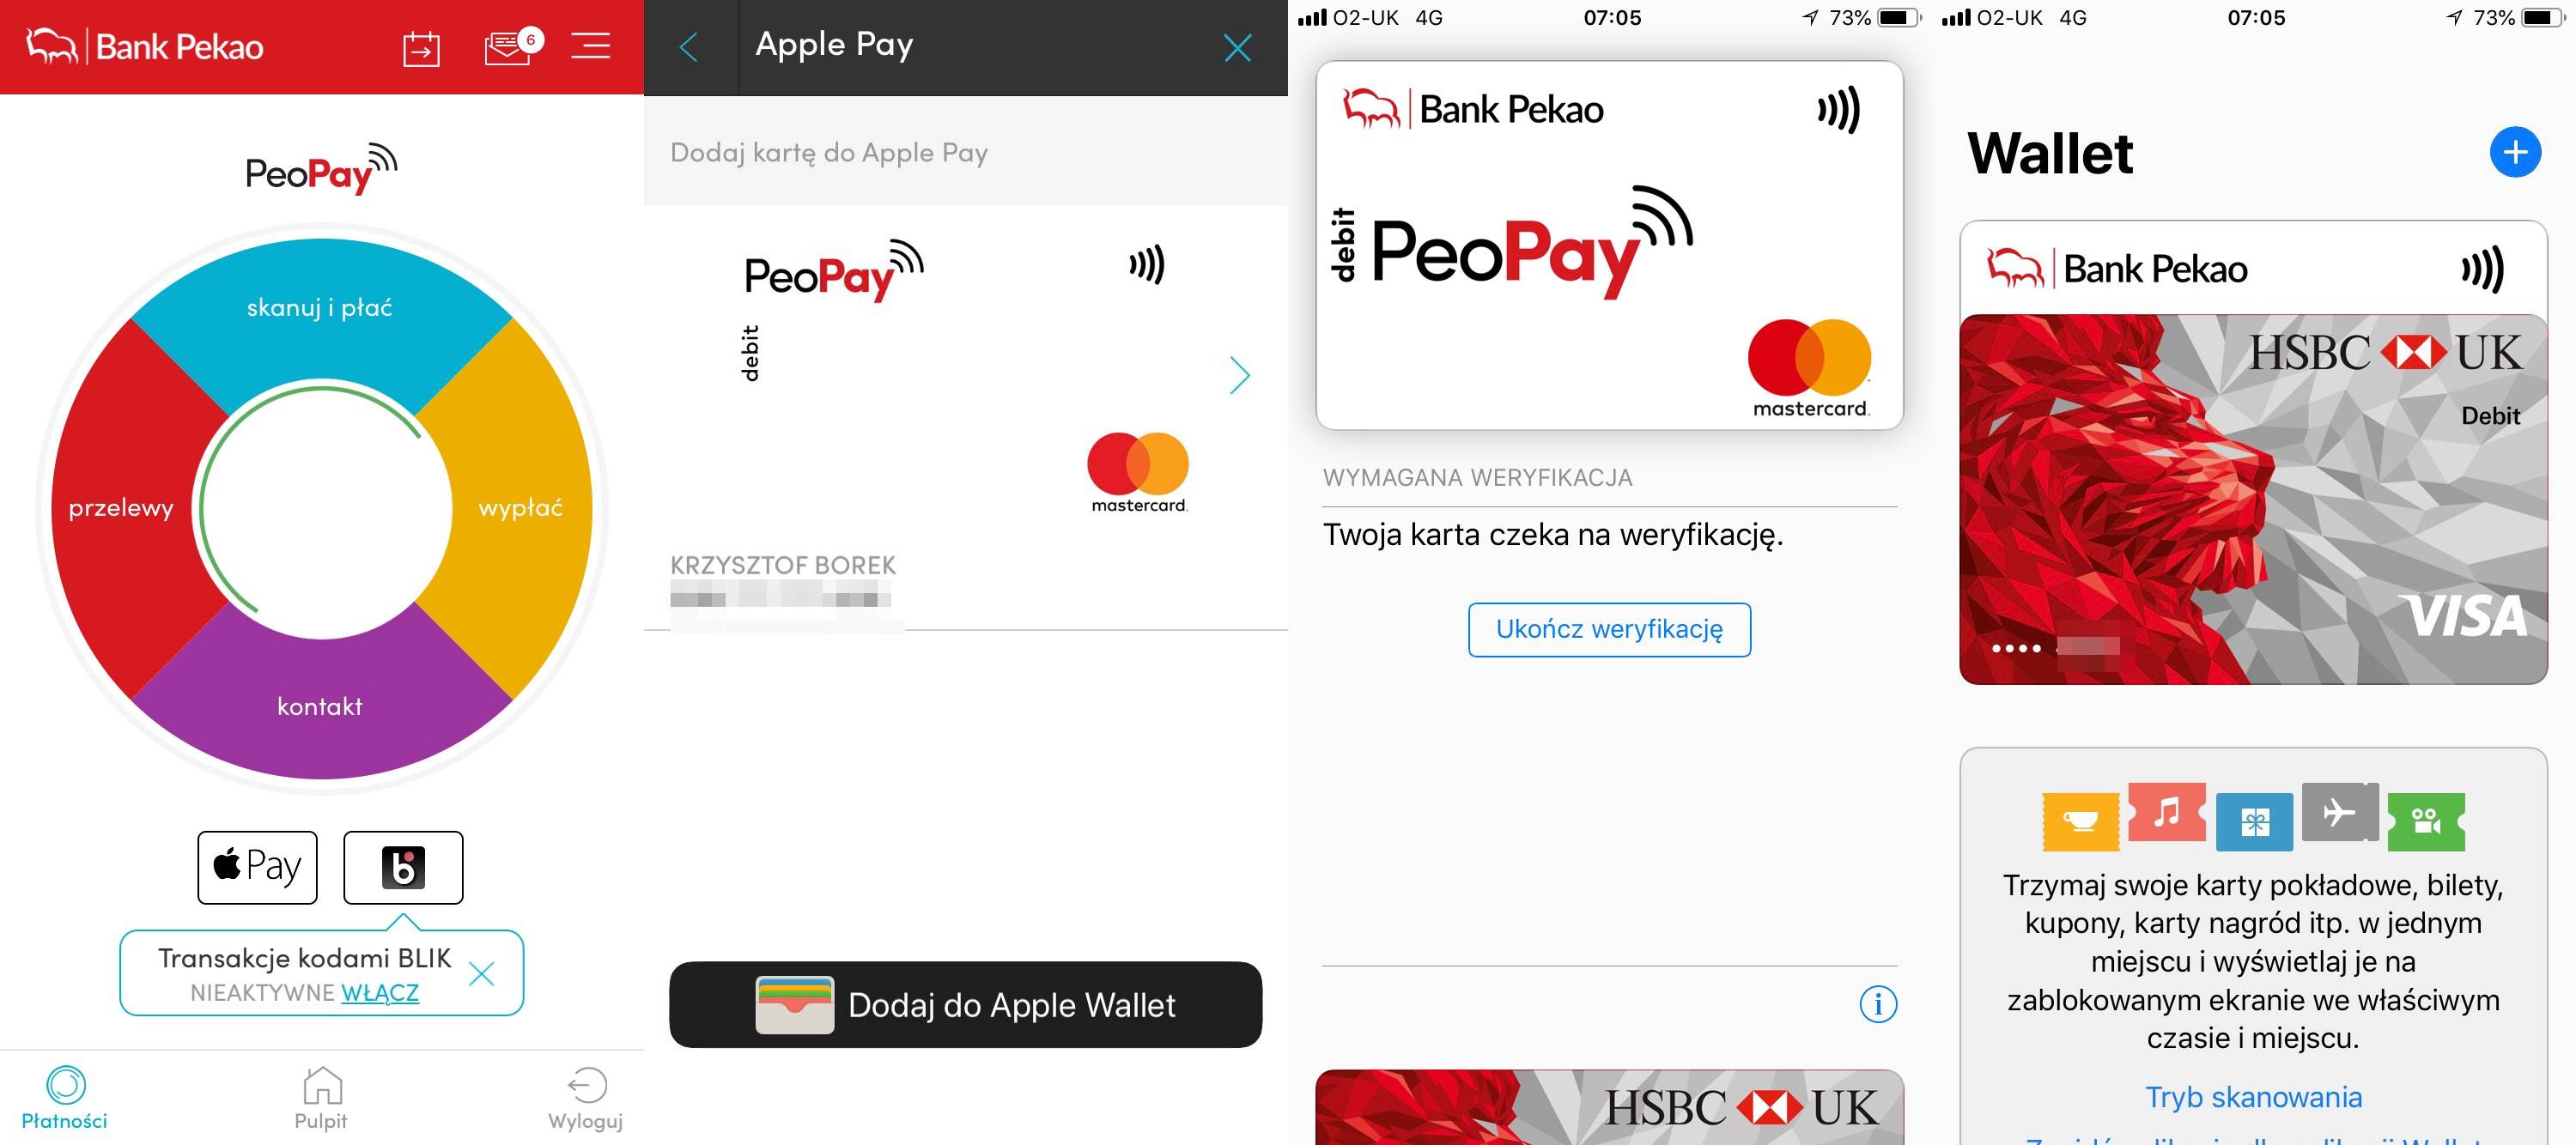 Jak dodać kartę do Apple Pay poradniki, polecane, ciekawostki Poradnik, krok po kroku, jak korzystać z Apple Pay, jak działa Apple Pay, jak dodać kartę w iPhone, jak dodać kartę do Apple Pay, iPhone, Instrukcja, Apple Pay  Od dziś Apple Pay jest w końcu oficjalnie dostępne w Polsce, choć ja używam tej usługi od marca tego roku w Wielkiej Brytanii. IMG 1961